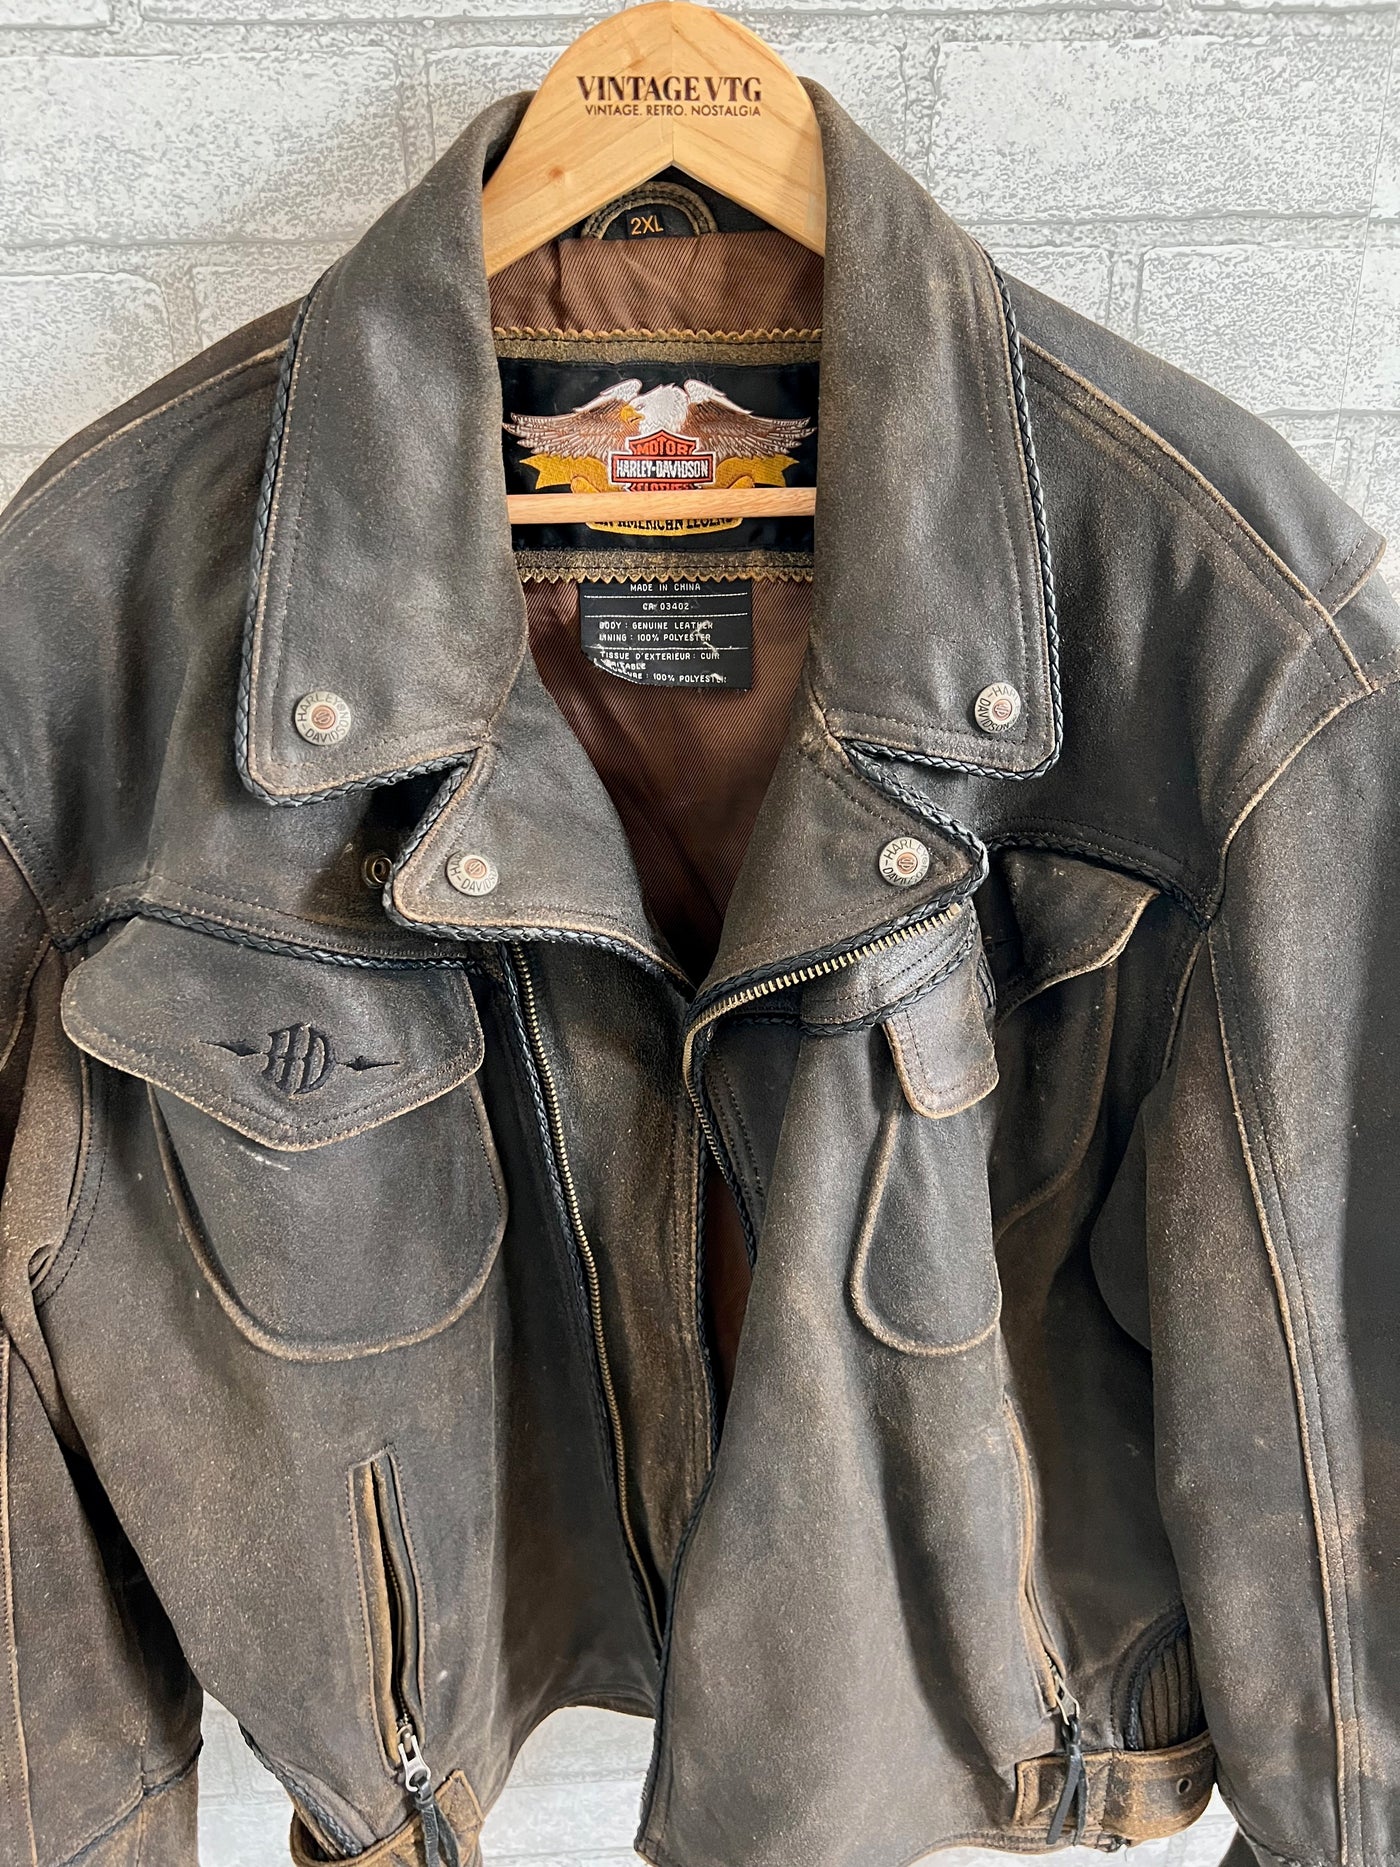 Rare Vintage Harley Davidson Billings Leather Jacket.